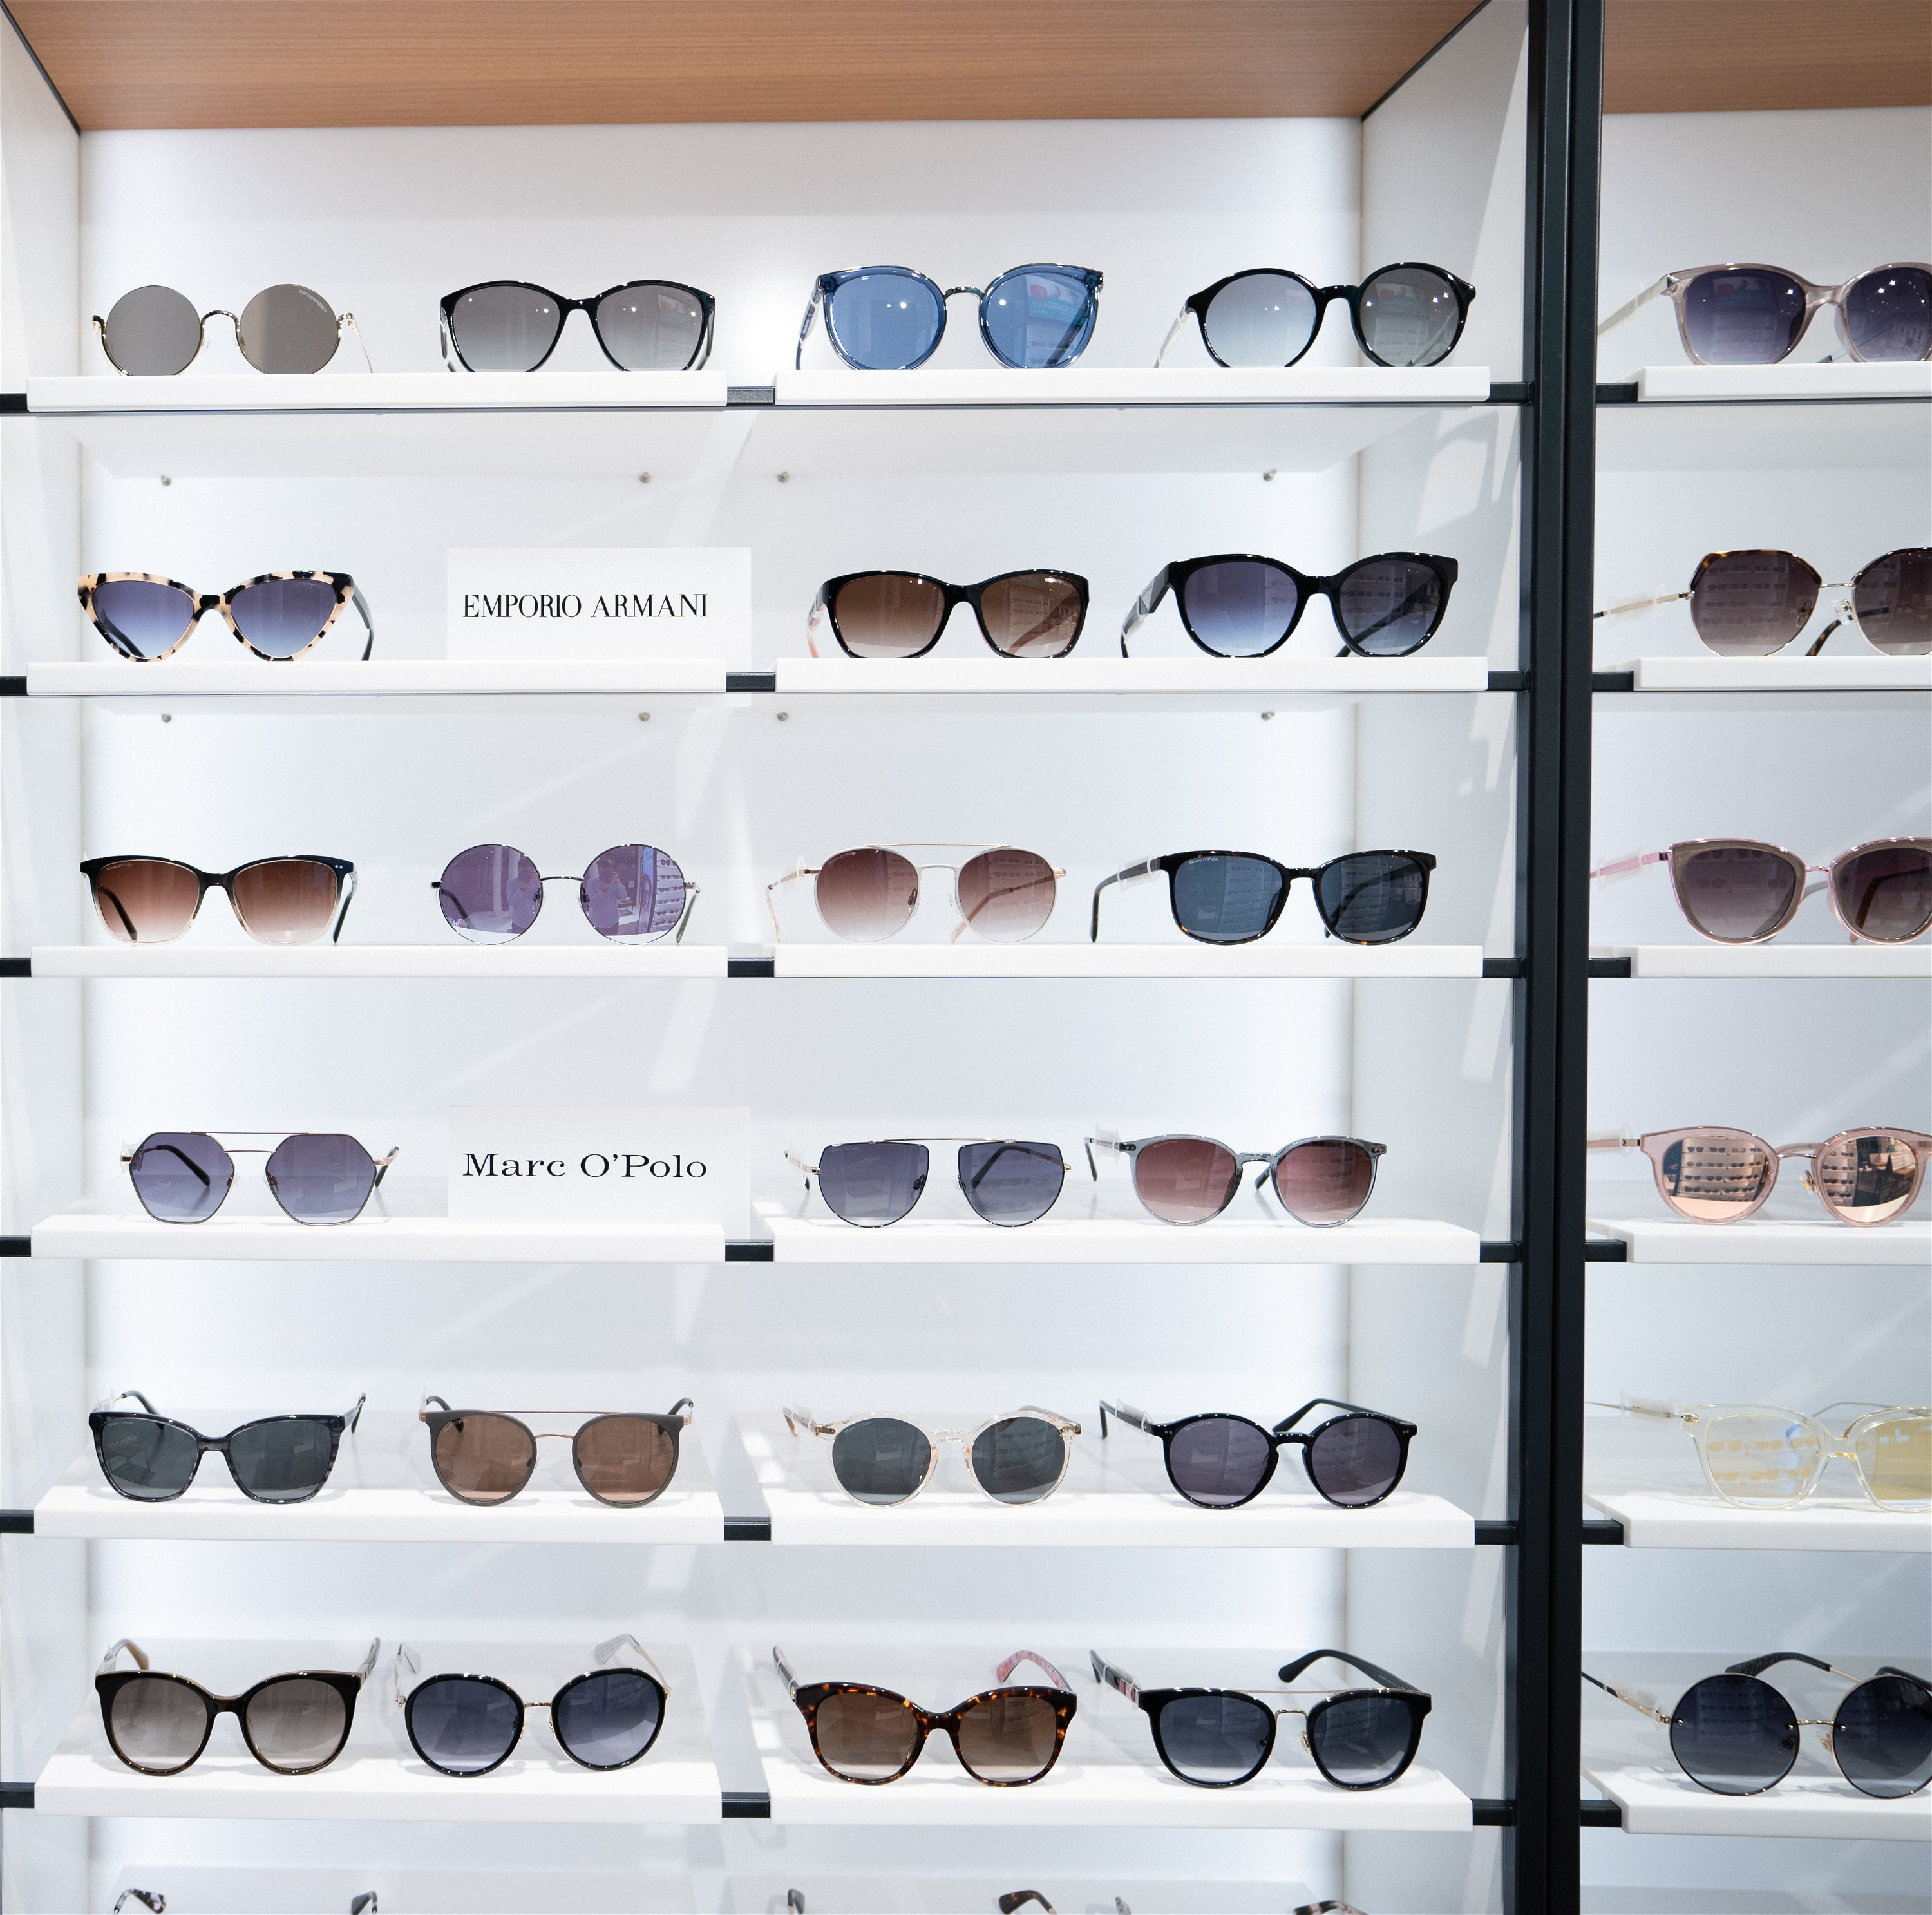 Zu sehen ist ein Regal mit Sonnenbrillen-Modellen unterschiedlicher Marken